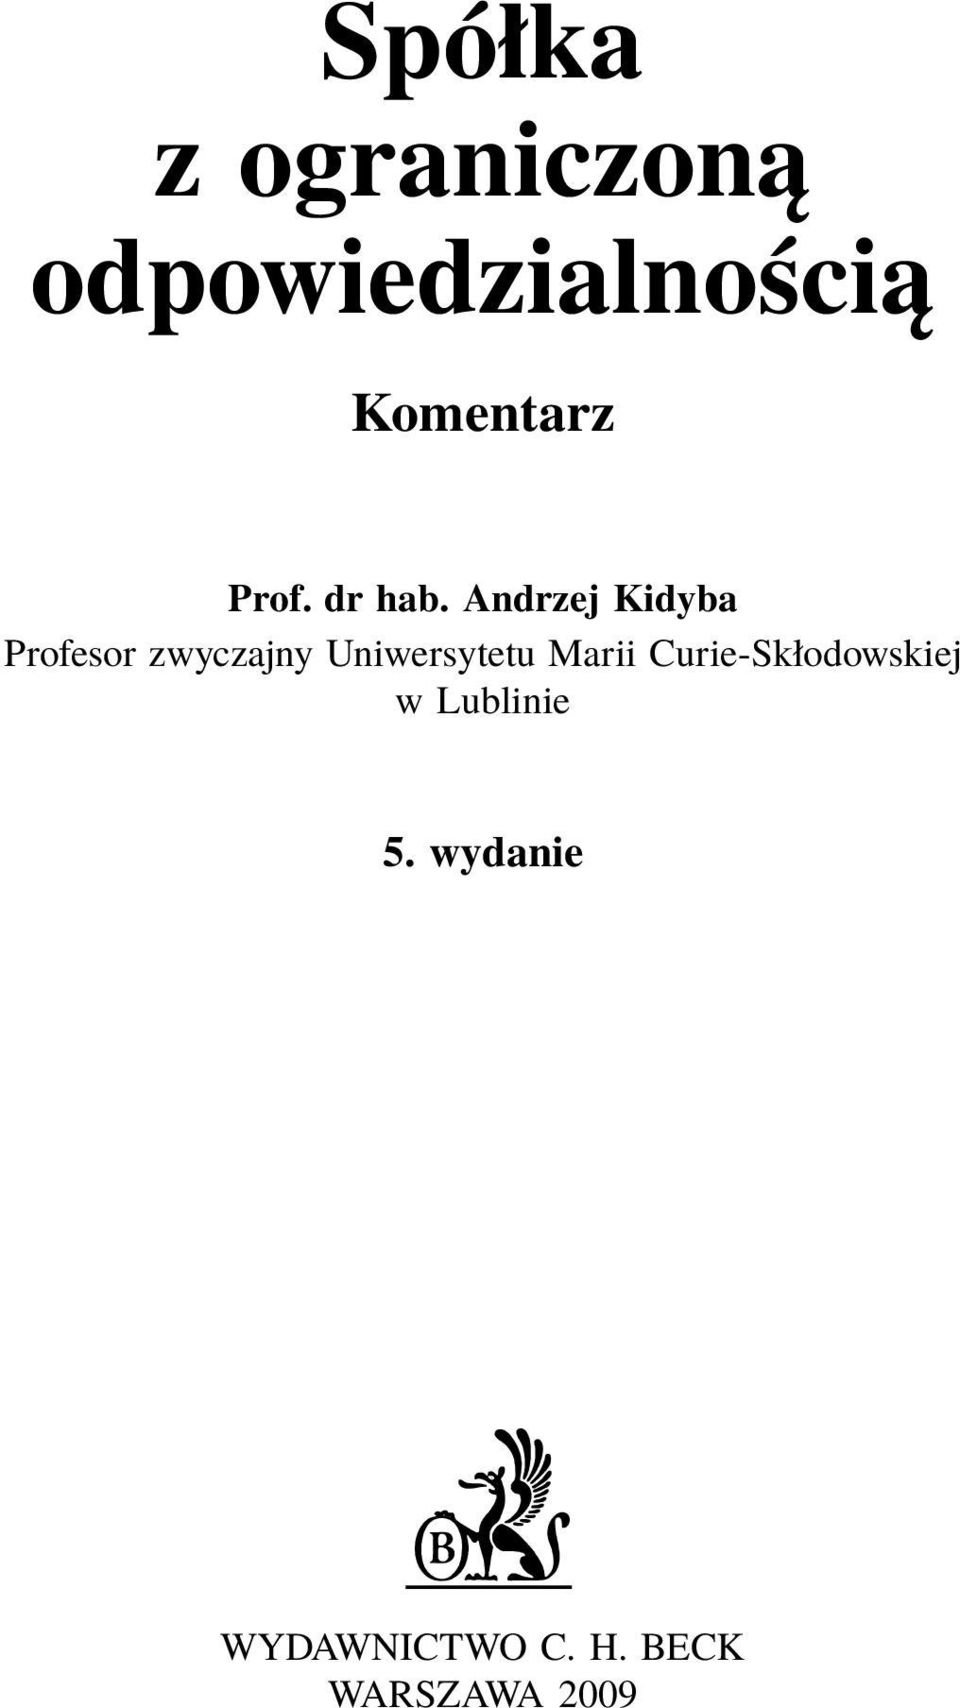 Andrzej Kidyba Profesor zwyczajny Uniwersytetu